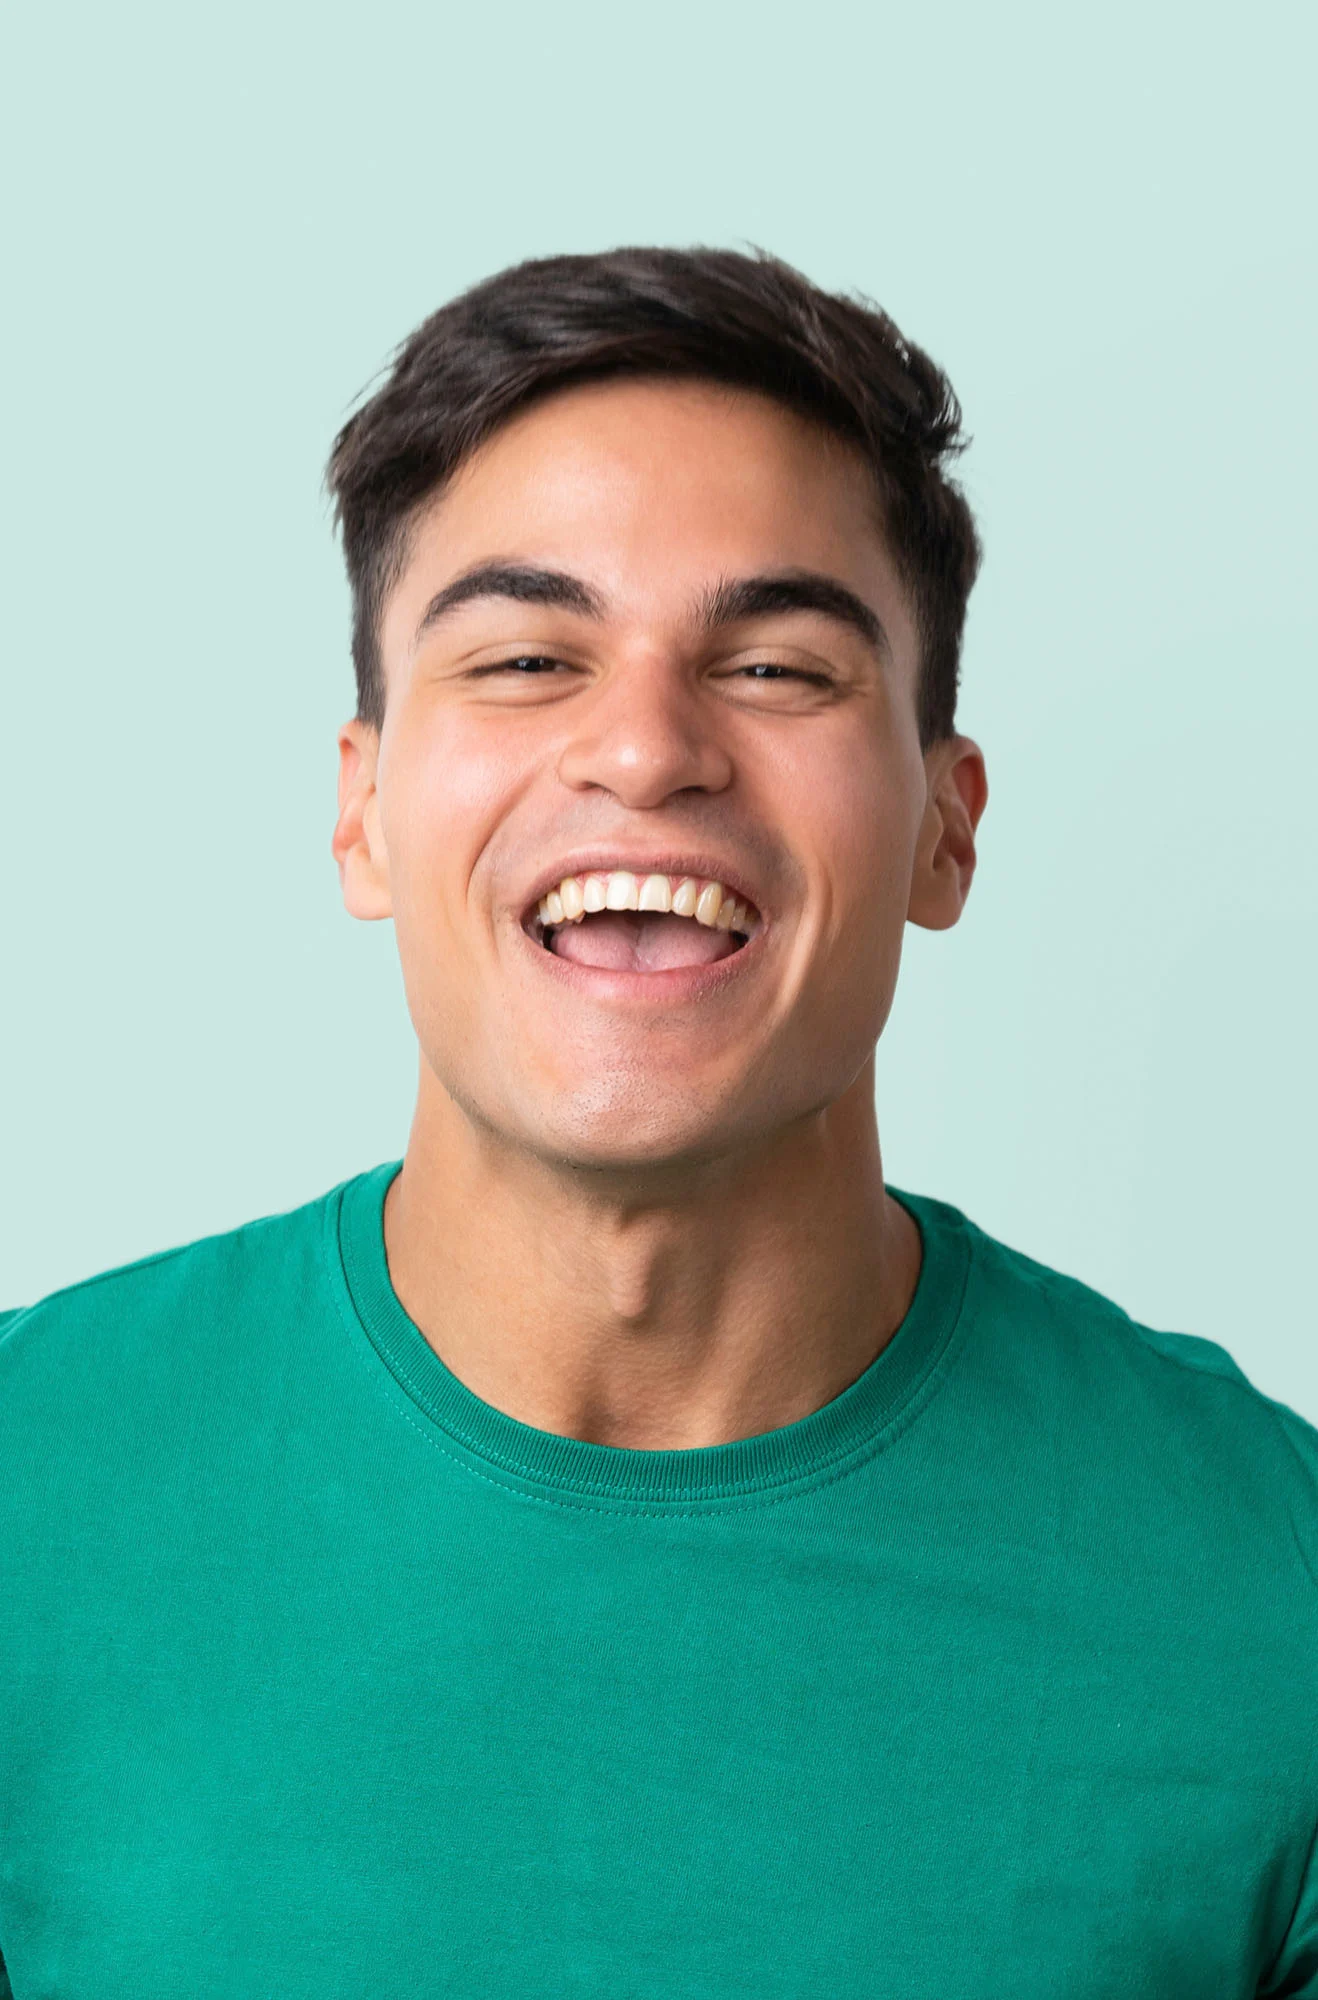 Man in green shirt smiling